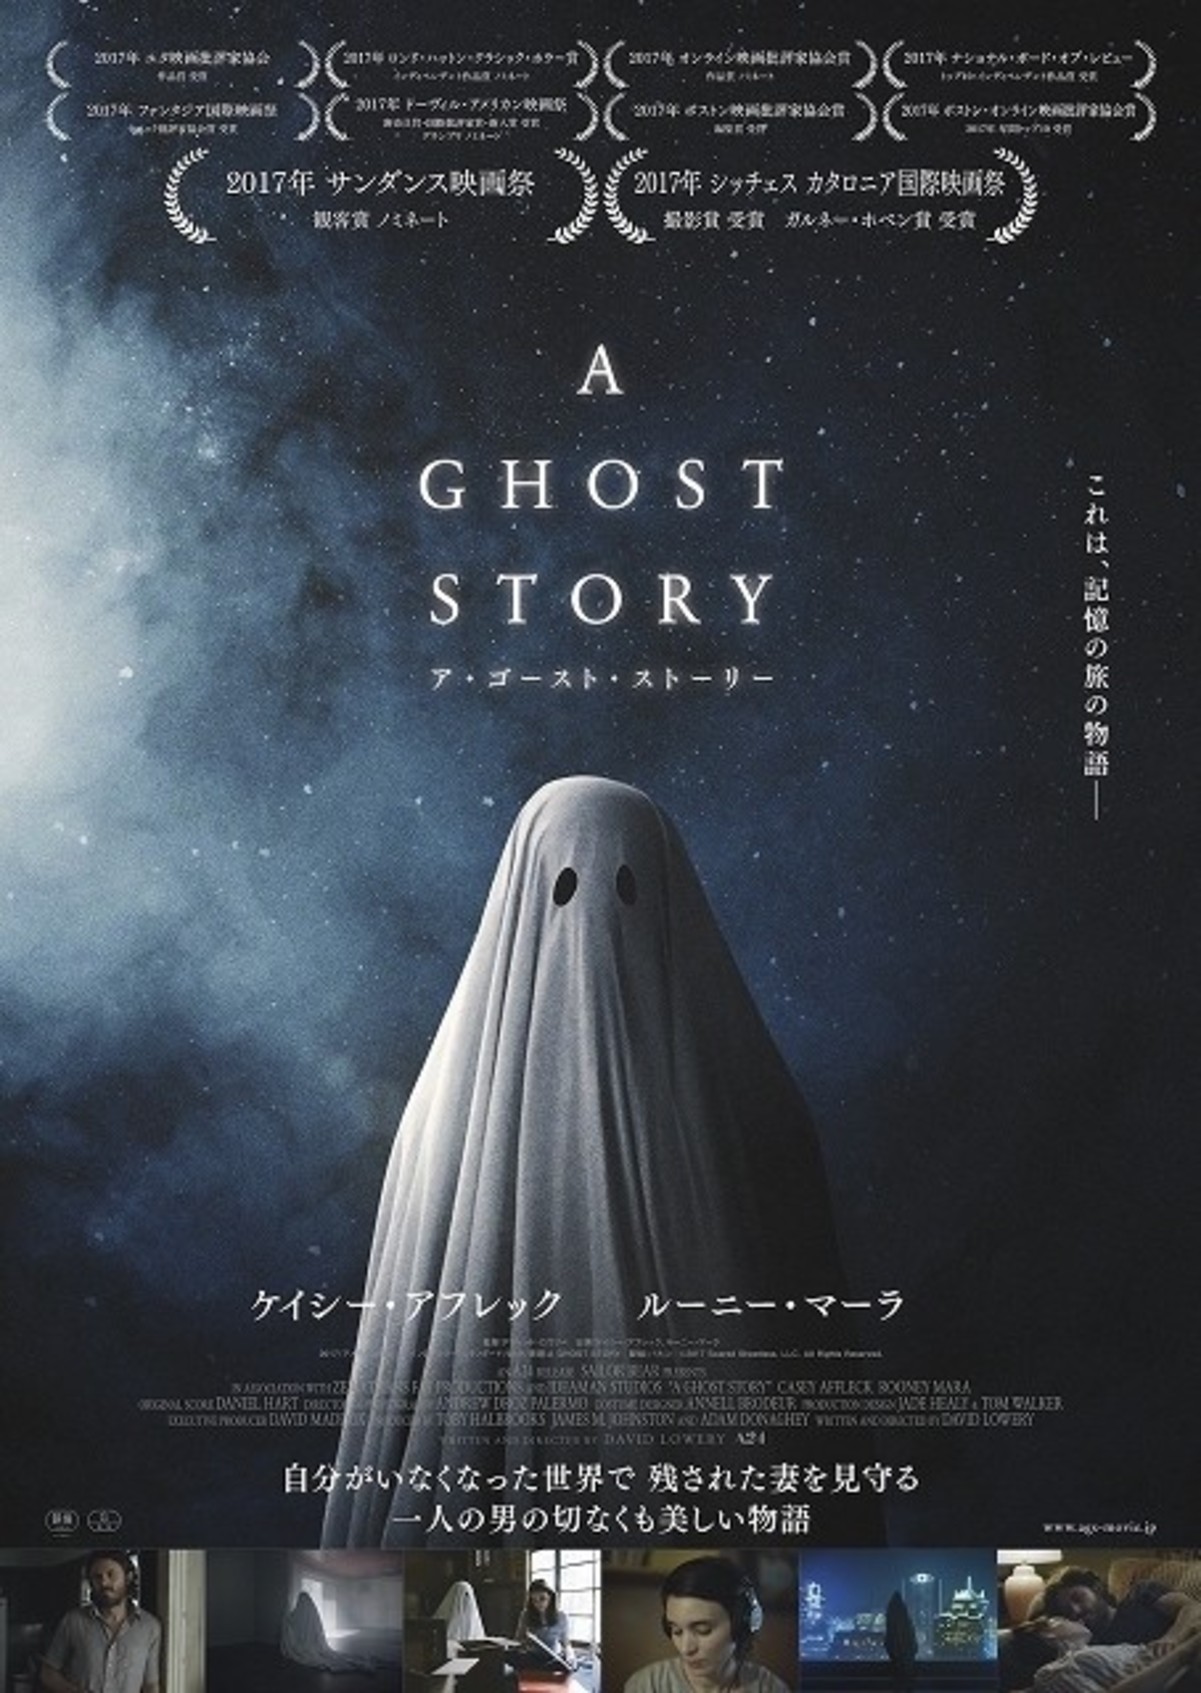 最注目スタジオ 4 が紡ぐ 切なき 幽霊の物語 11月17日公開決定 特報披露 映画ニュース 映画 Com